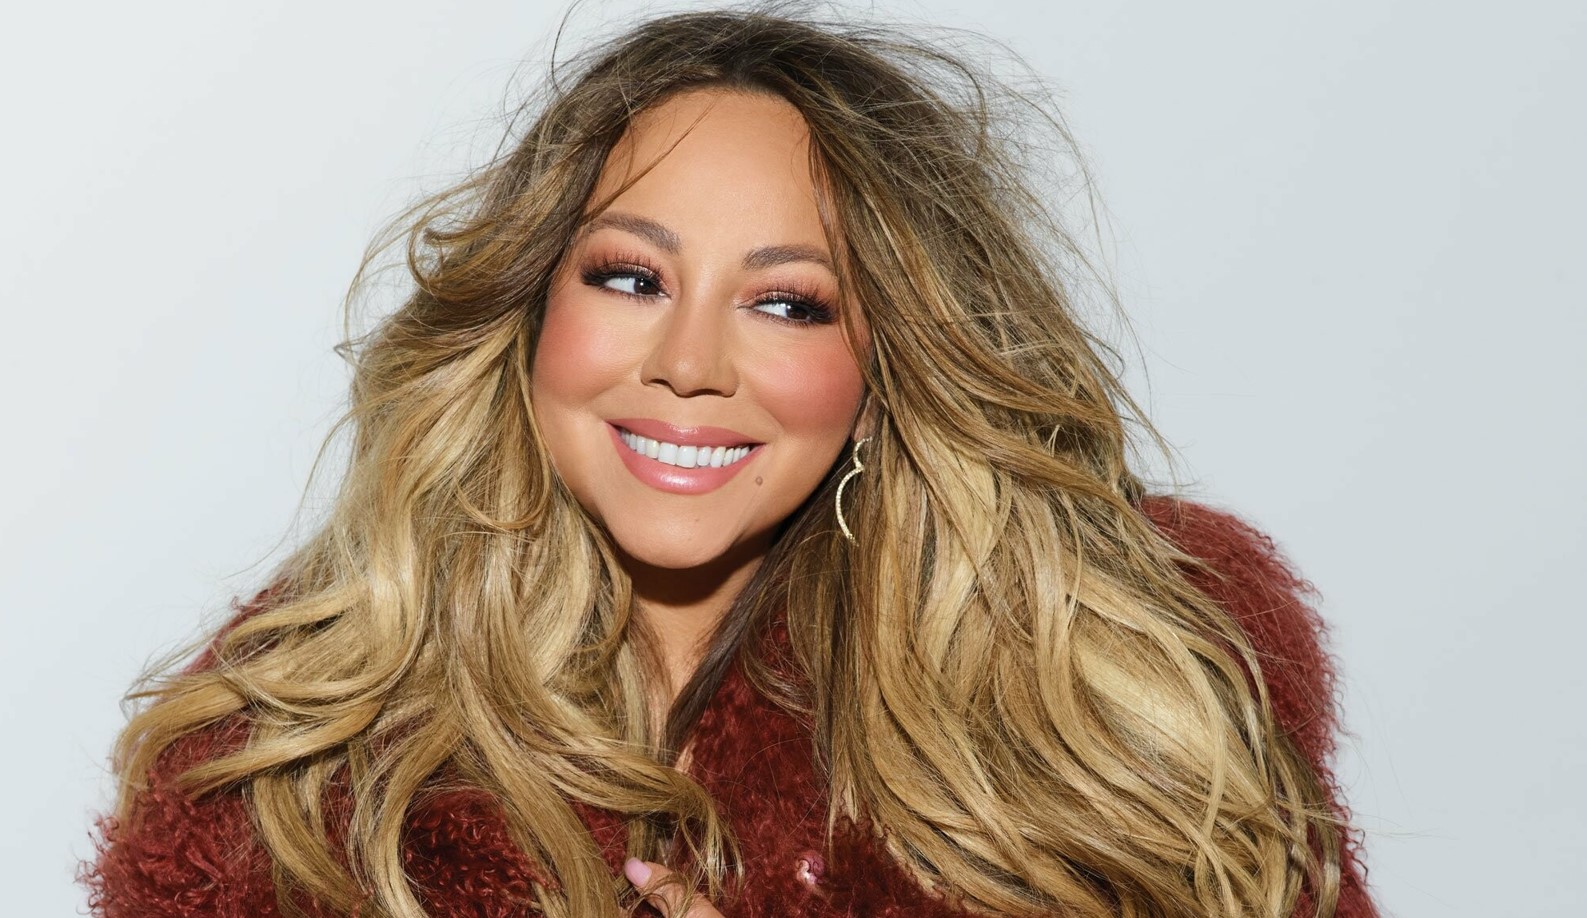 Τα 20 καλύτερα τραγούδια της Mariah Carey σύμφωνα με το μουσικό περιοδικό Billboard